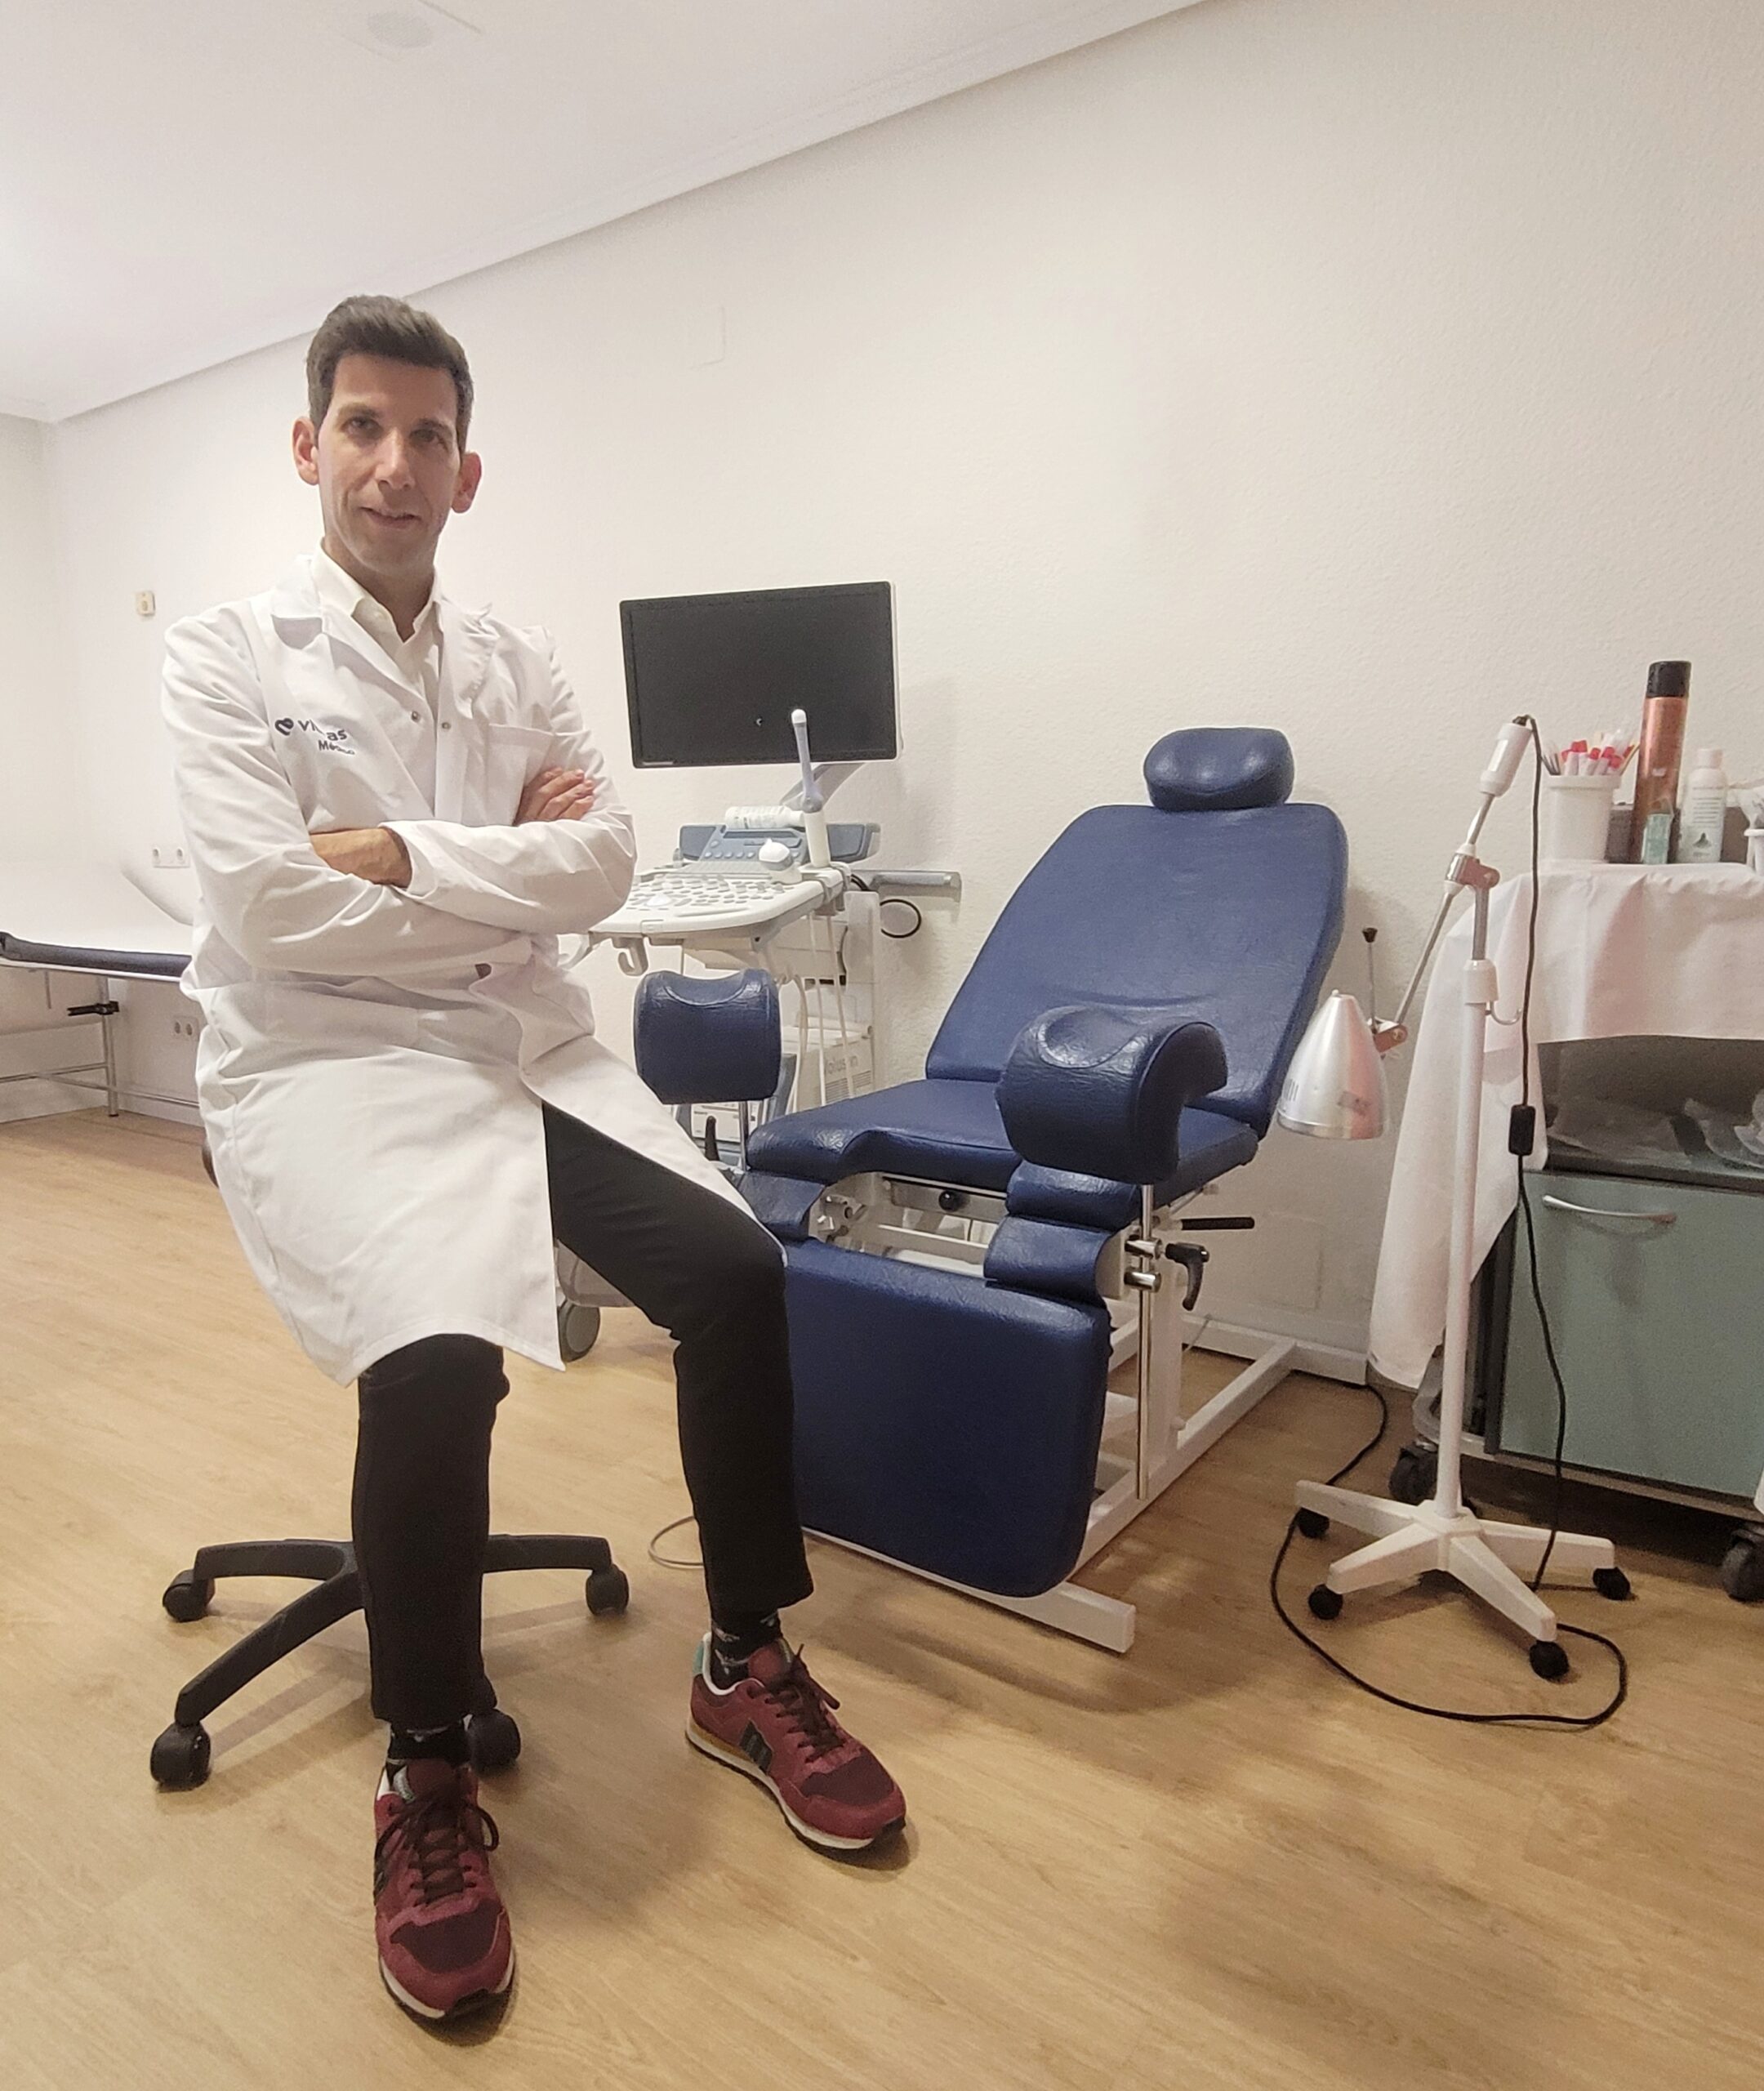 Vithas Valencia Consuelo pone en marcha una Unidad de Ginecología Integrativa, Regenerativa y Funcional liderada por el doctor Ernesto Bas